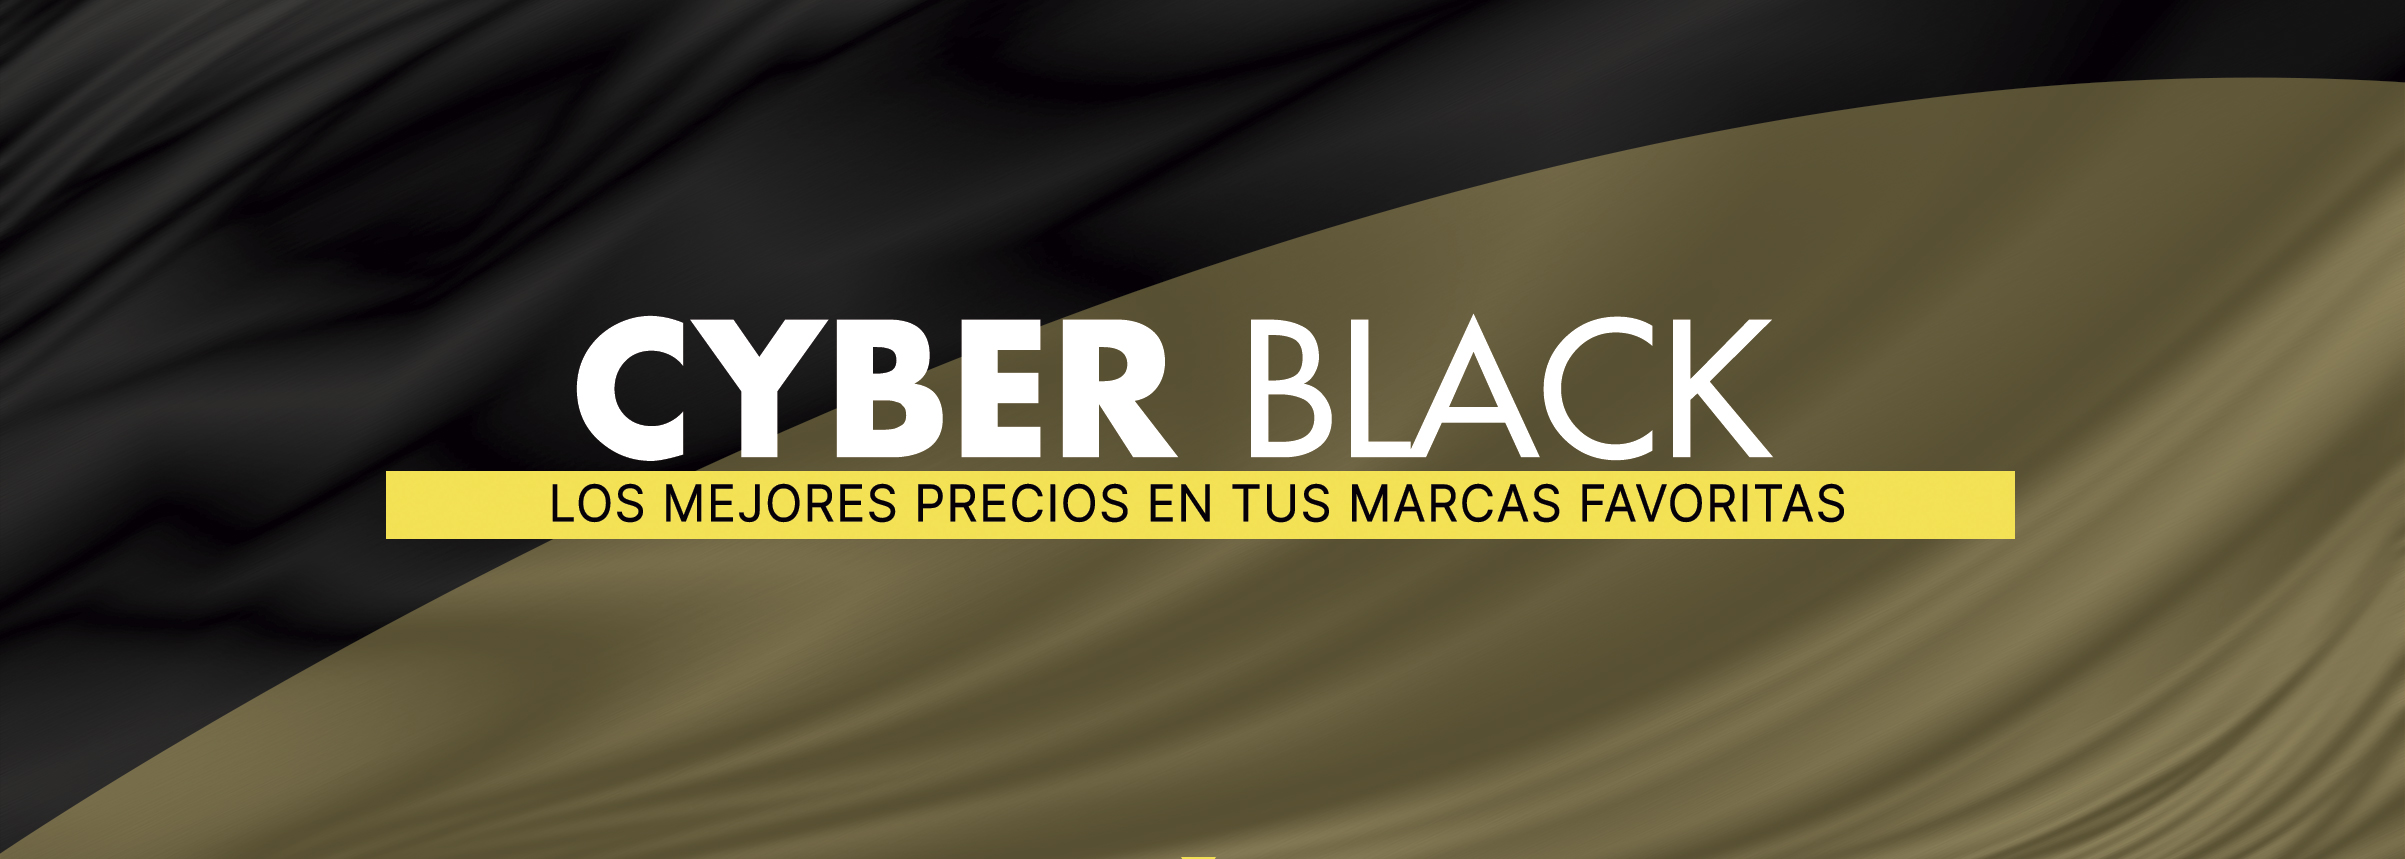 Cabecera Cyber black cyber monday